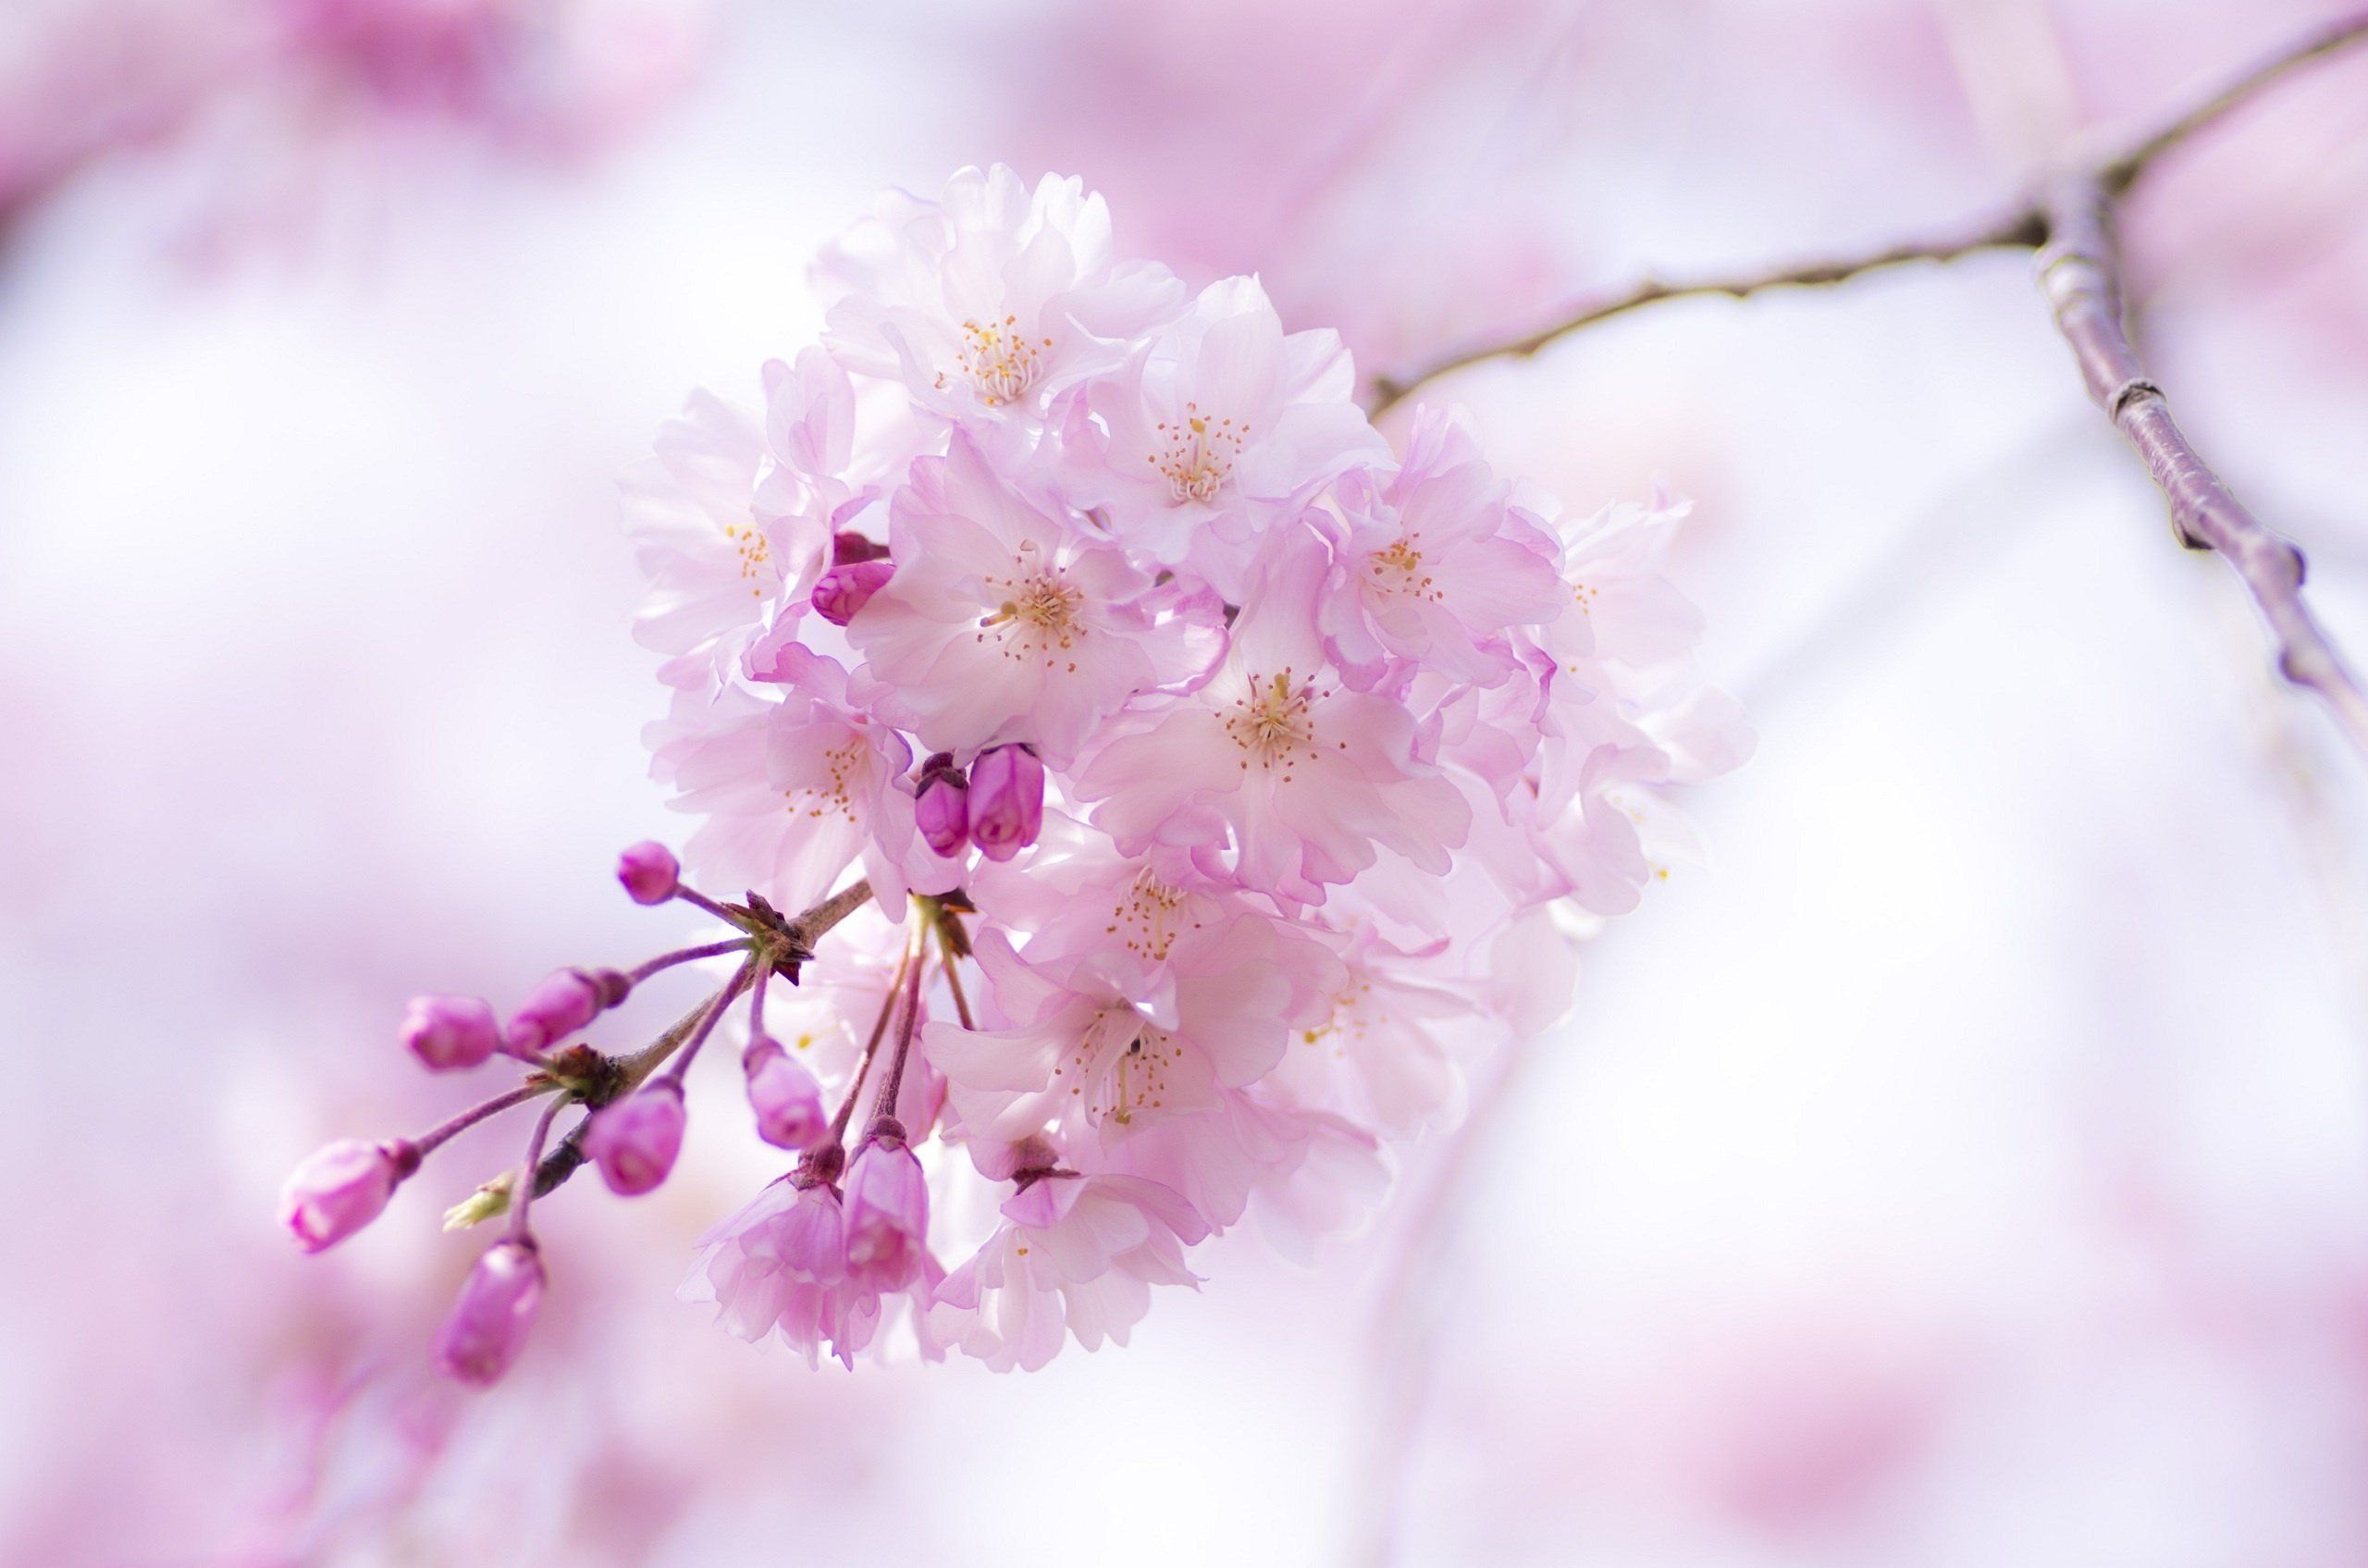 عکس فوق العاده شکوفه بهاری قشنگ 